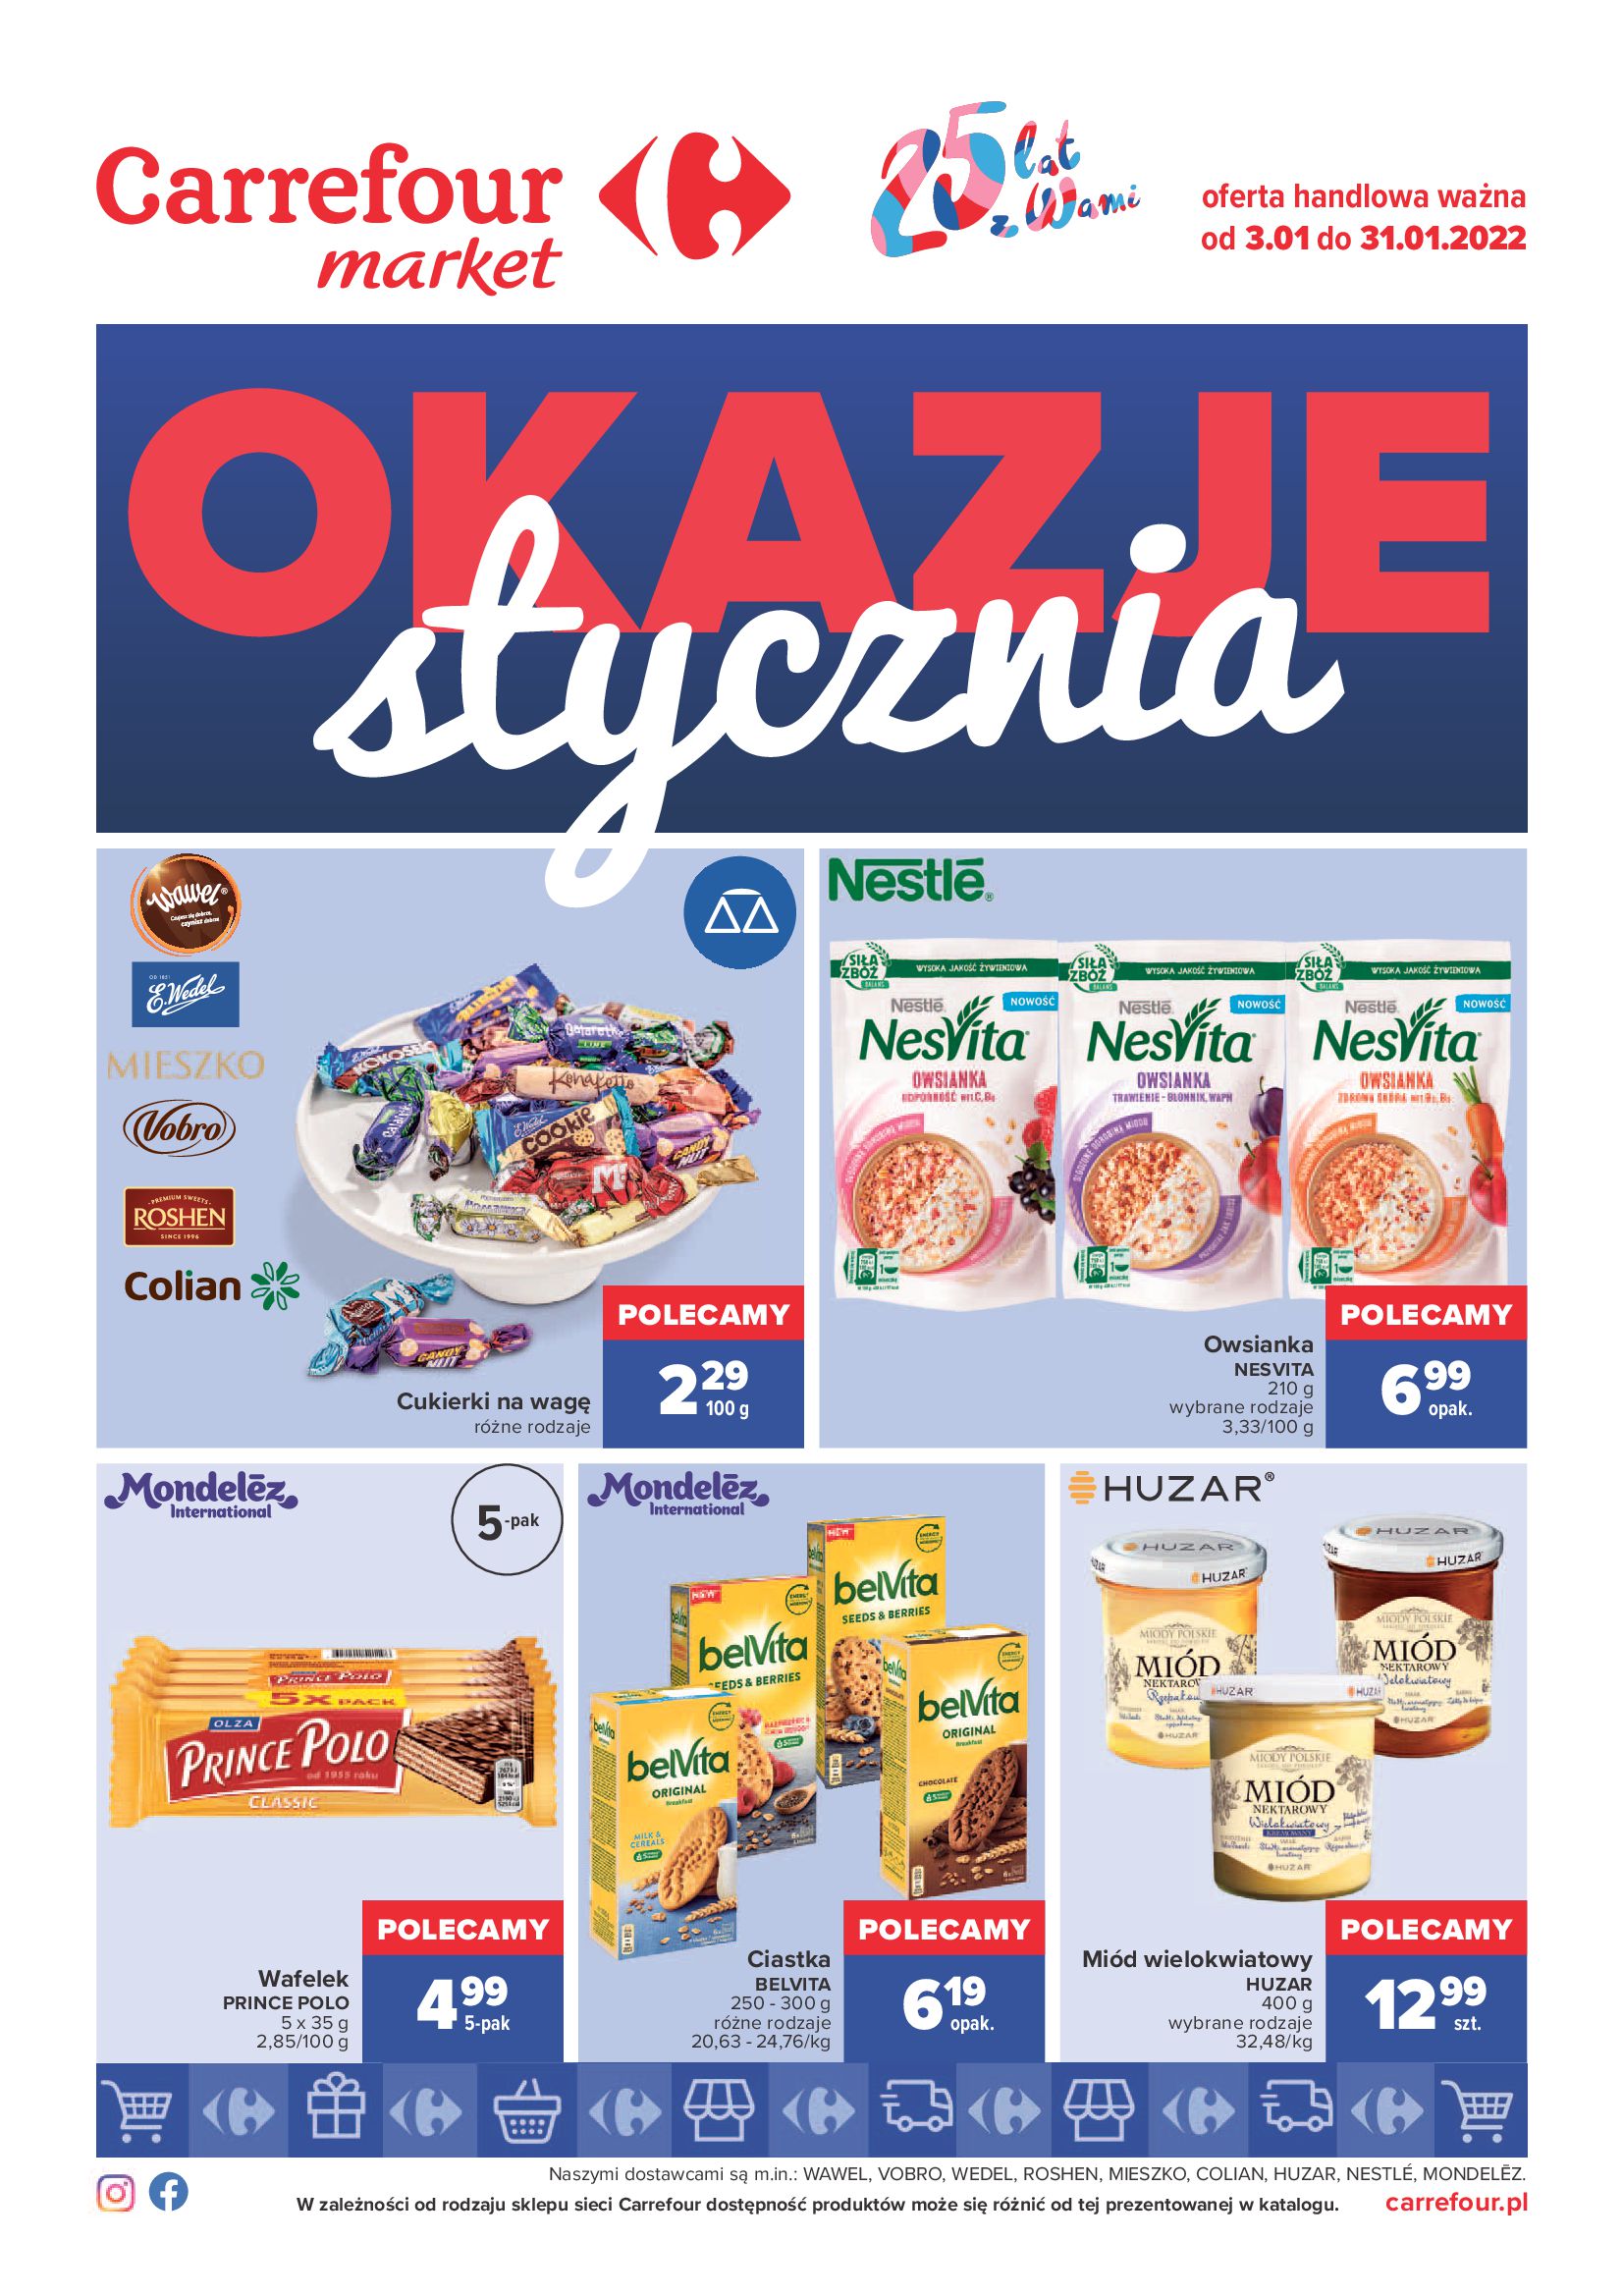 Gazetka Carrefour Market: Gazetka carrefour Market - Okazje Stycznia od 03.01 2022-01-03 page-1